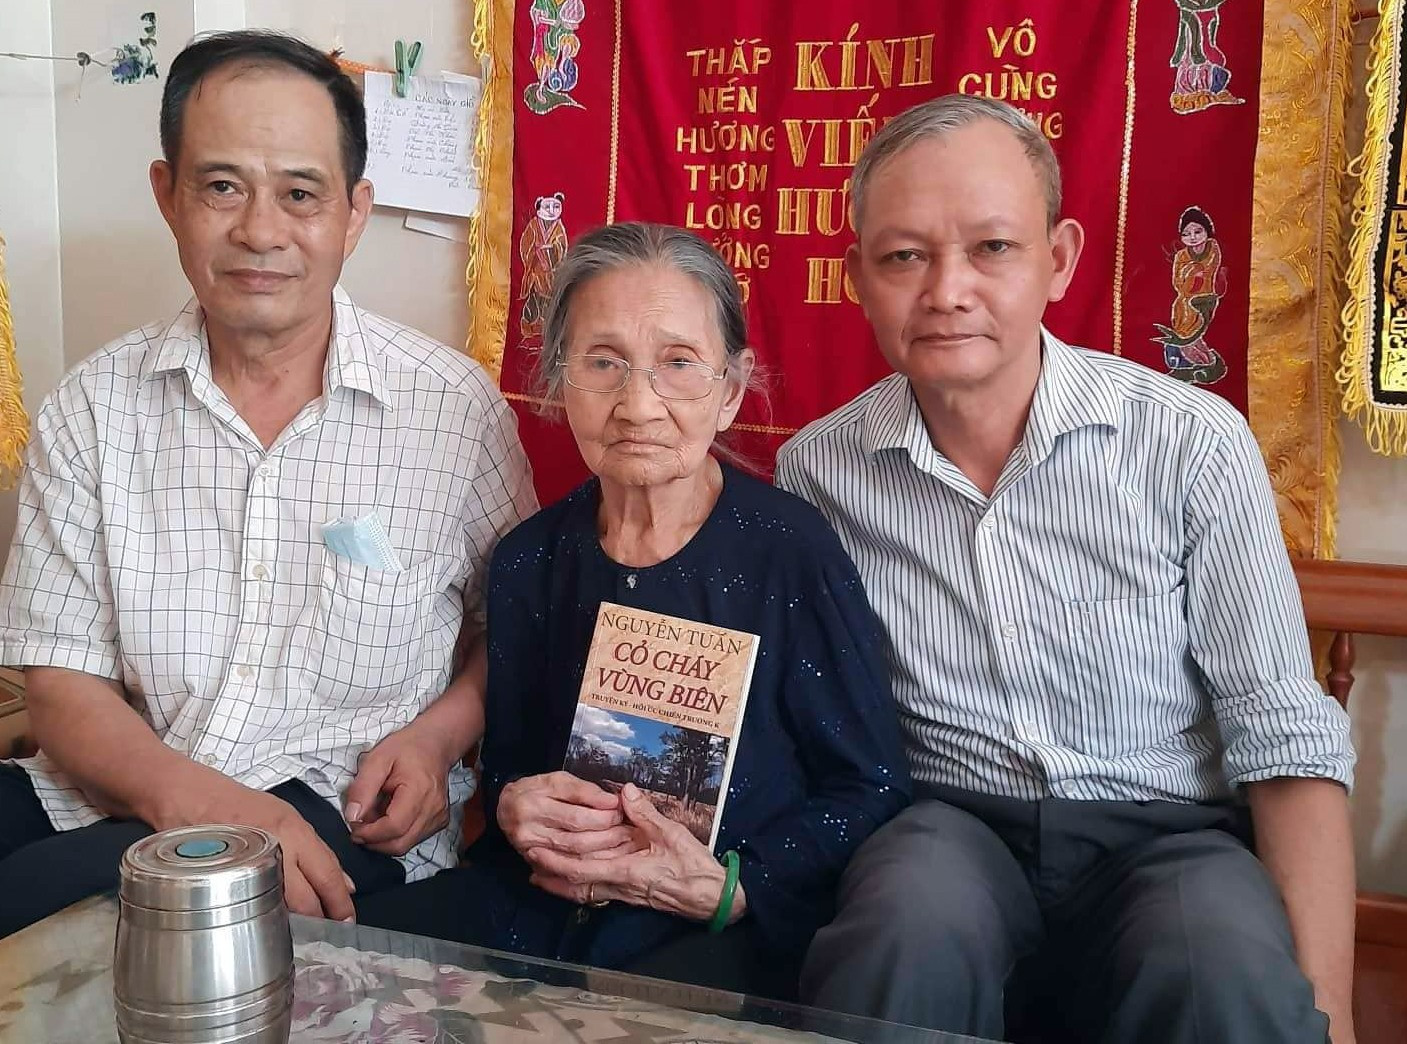 Tác giả Nguyễn Tuấn (bìa trái) tặng sách “Cỏ cháy vùng biên” cho gia đình liệt sĩ Phạm Văn Chung.